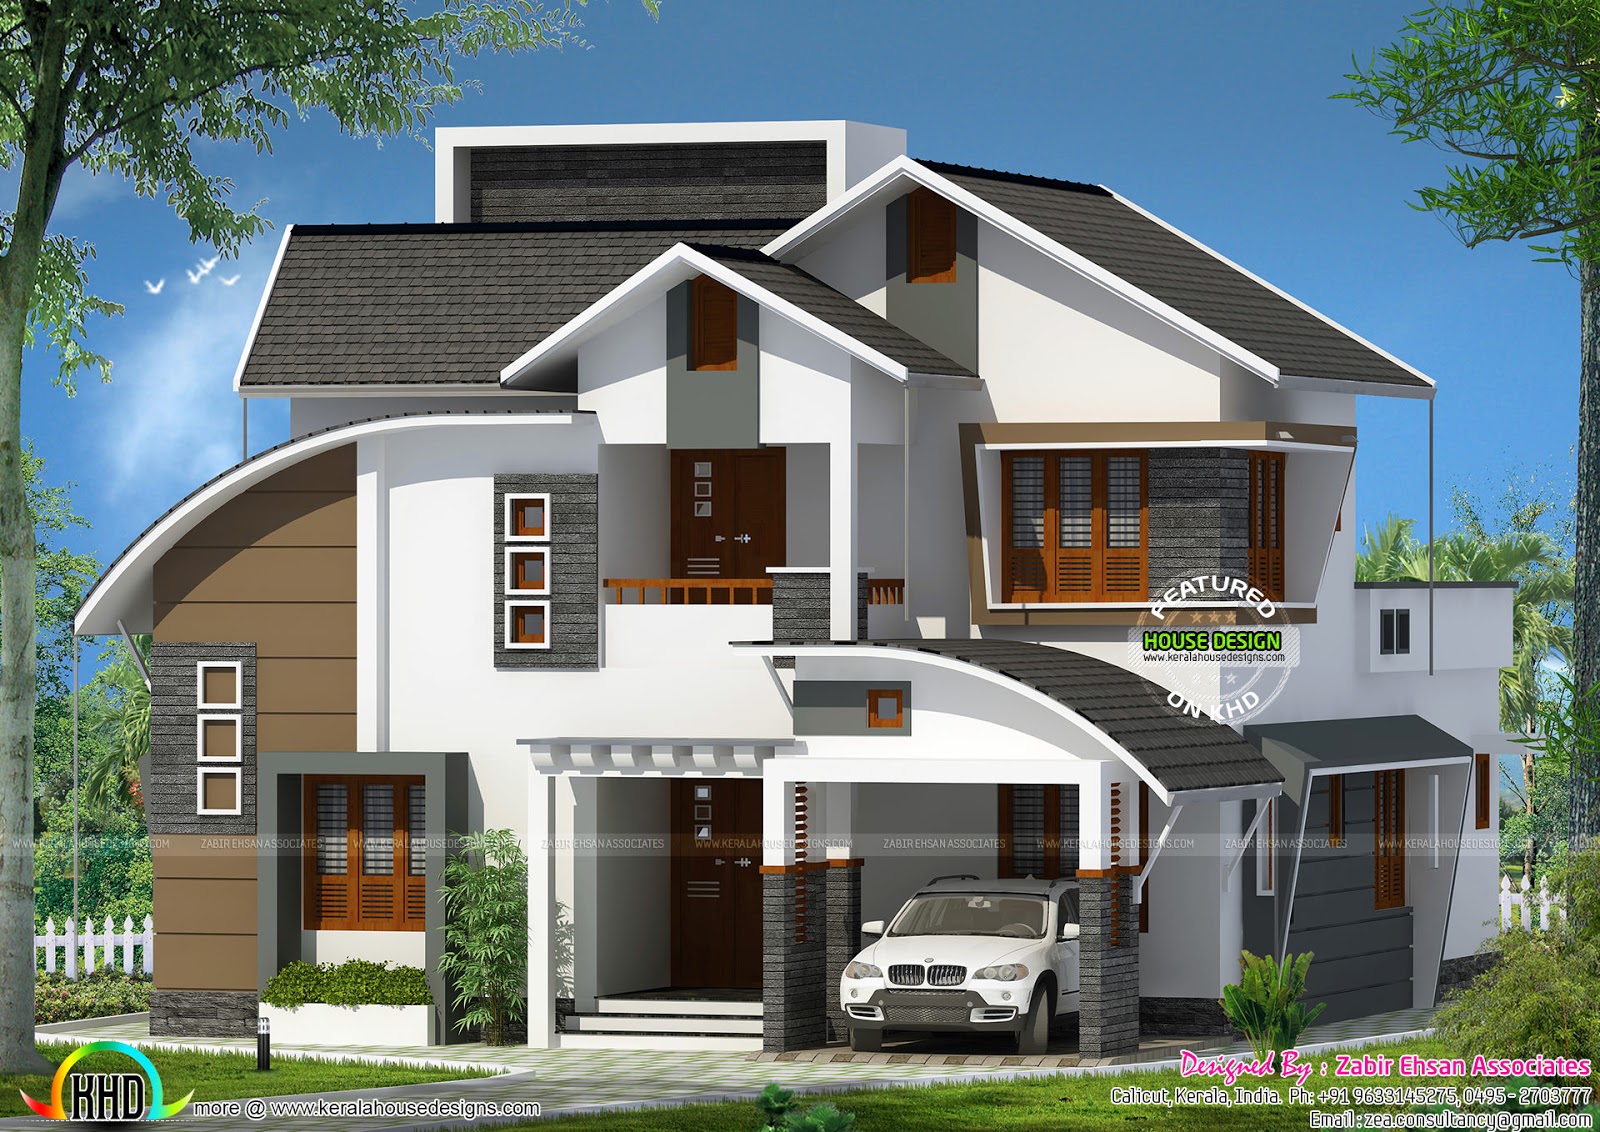 All mix roof  house  plan  by Zabir Ehsan Associates Kerala 